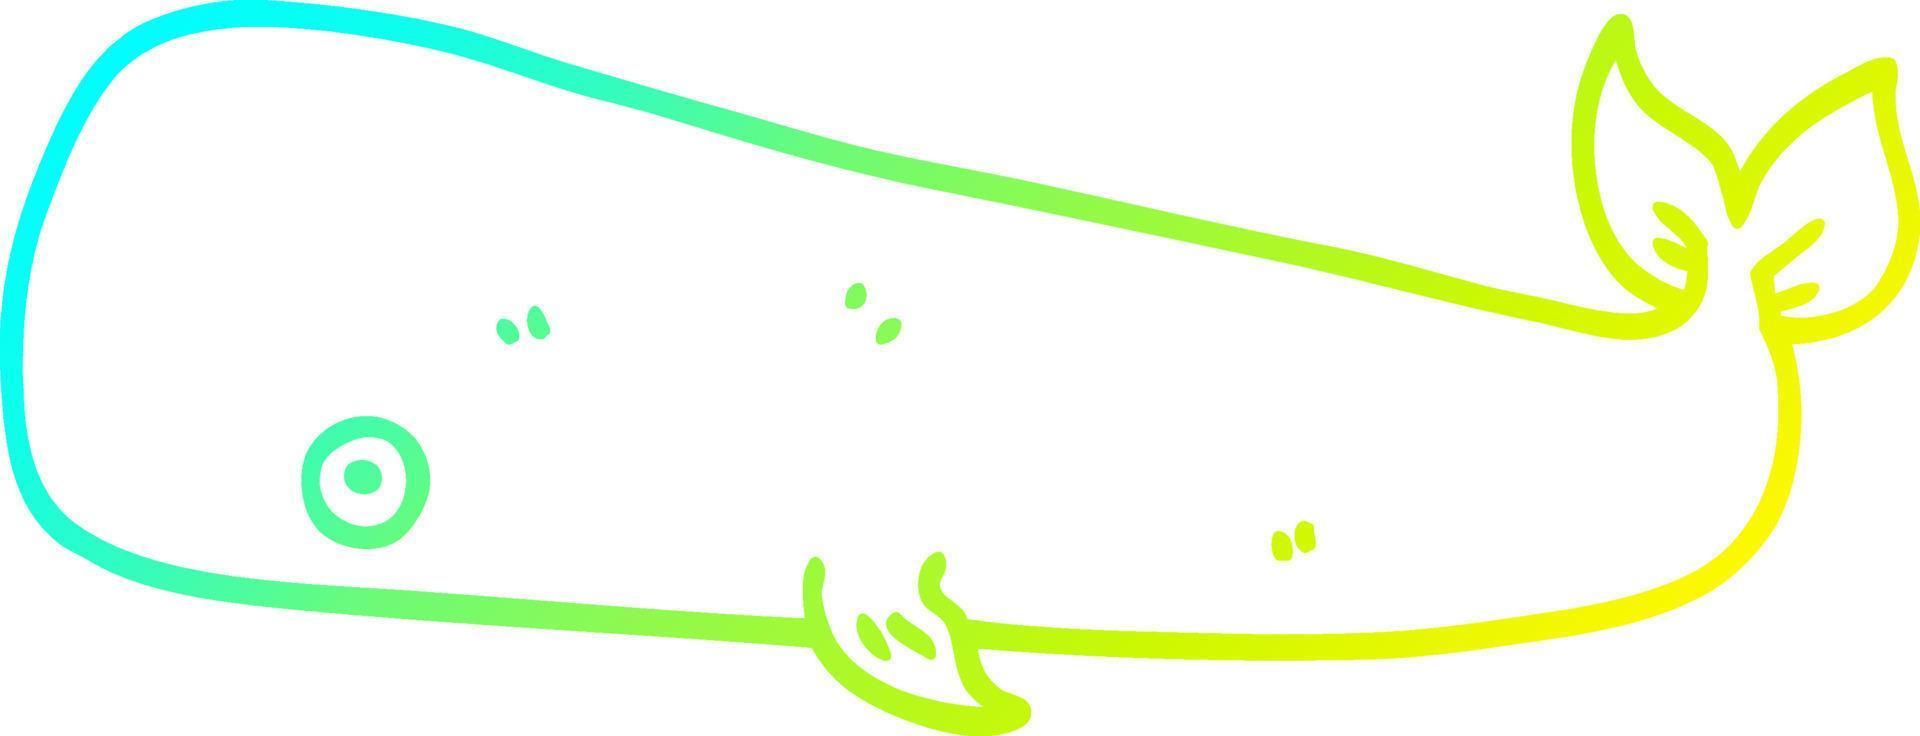 línea de gradiente frío dibujo ballena de dibujos animados vector